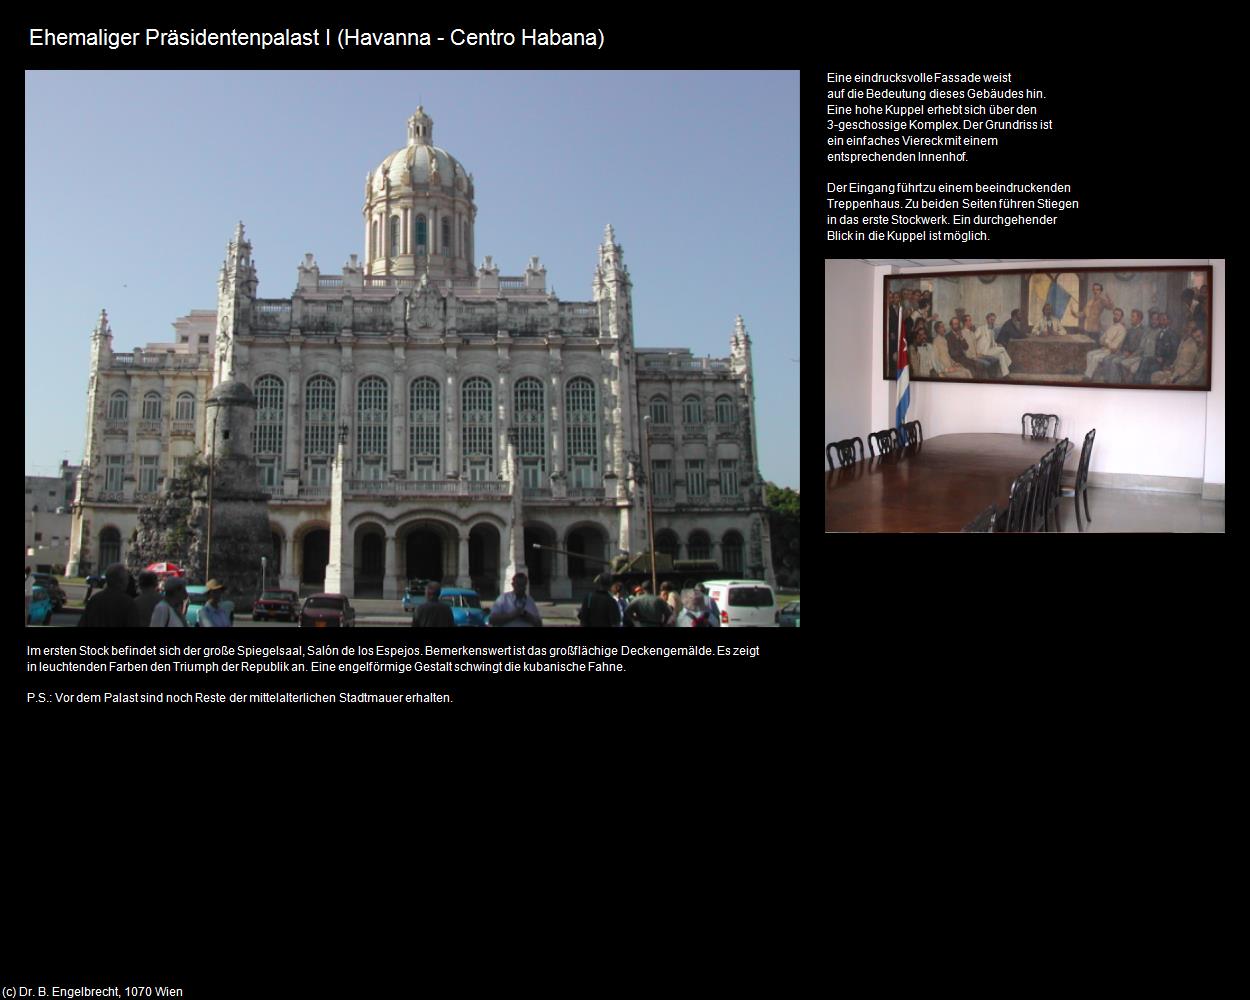 Ehem. Präsidentenpalast I  (Havanna/La Habana) in KUBA